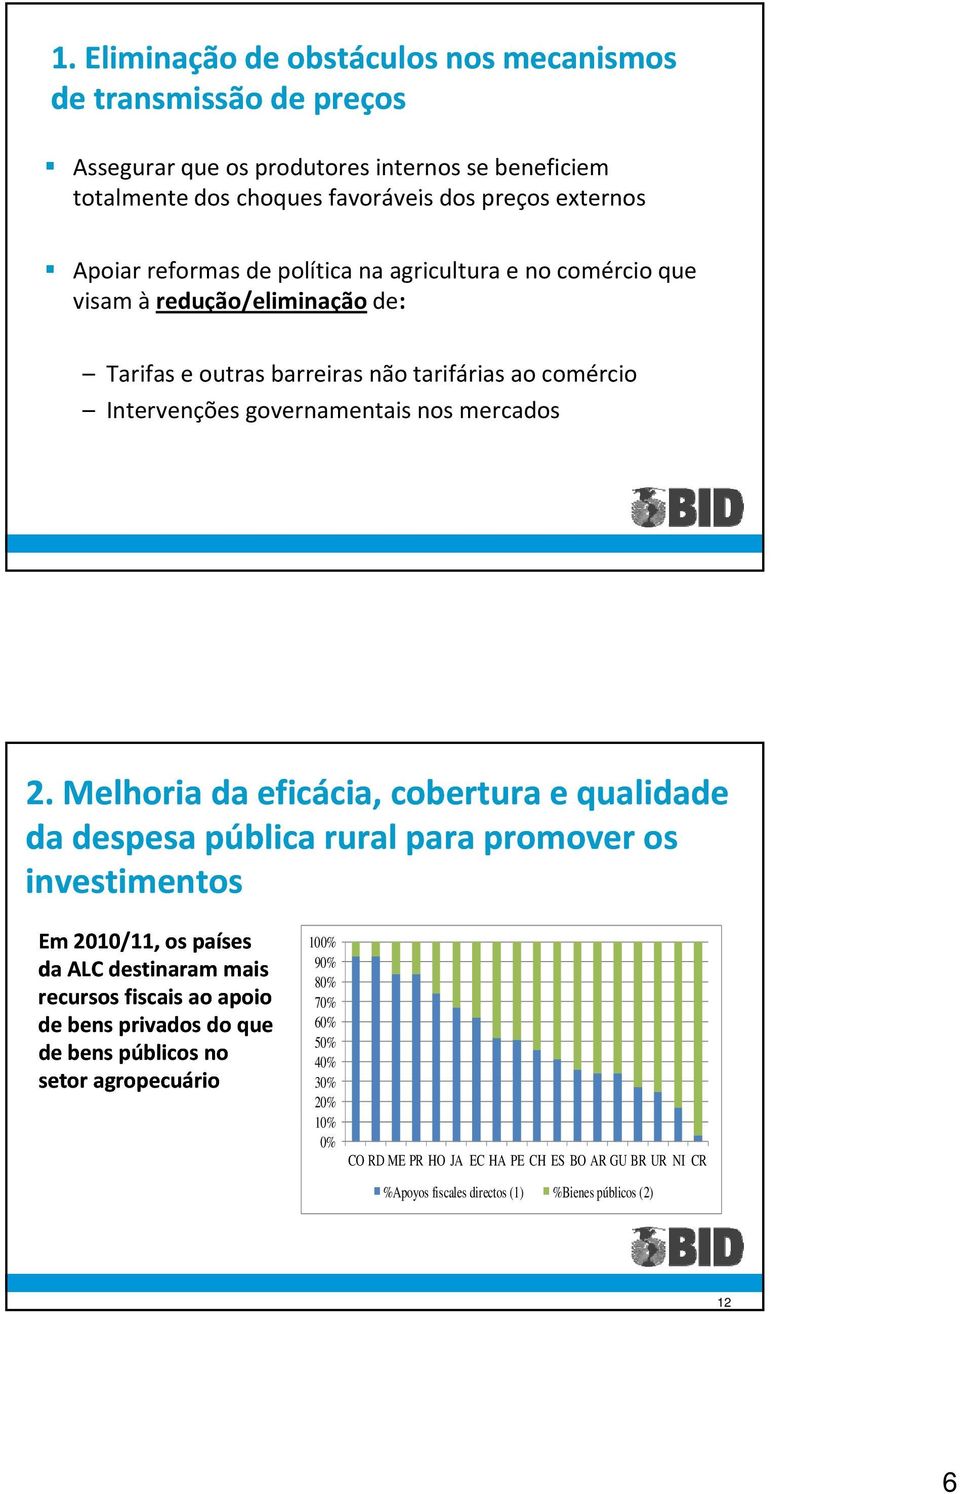 2. Melhoria da eficácia, cobertura e qualidade da despesa pública rural para promover os investimentos Em 2010/11, os países da ALC destinaram mais recursos fiscais ao apoio de bens privados